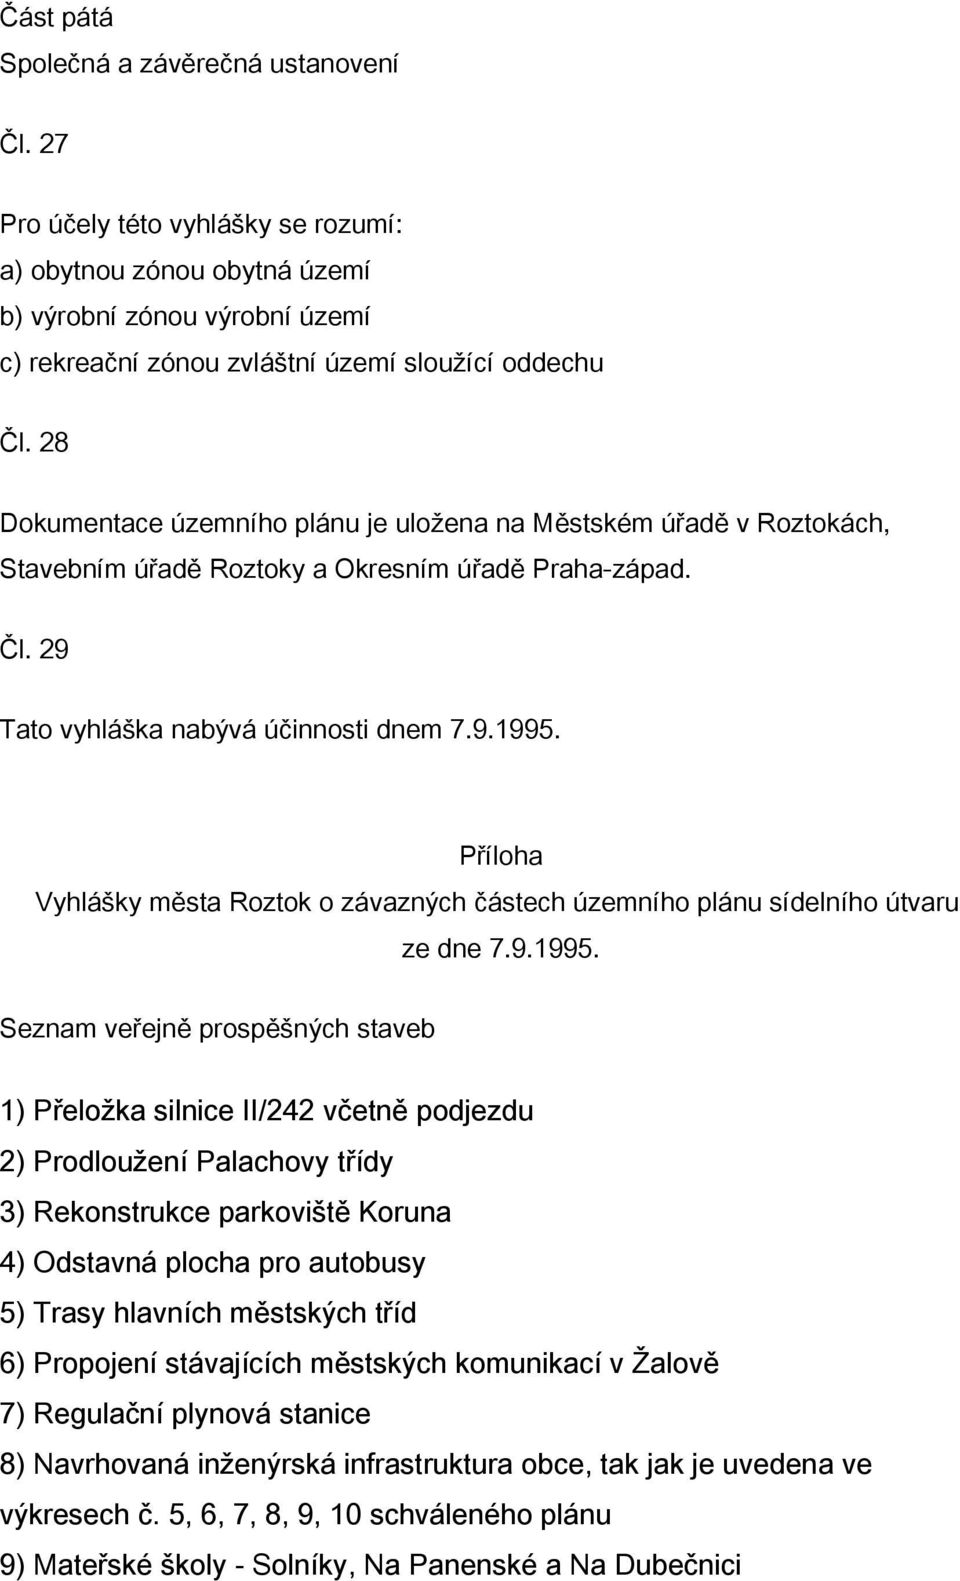 Příloha Vyhlášky města Roztok o závazných částech územního plánu sídelního útvaru ze dne 7.9.1995.